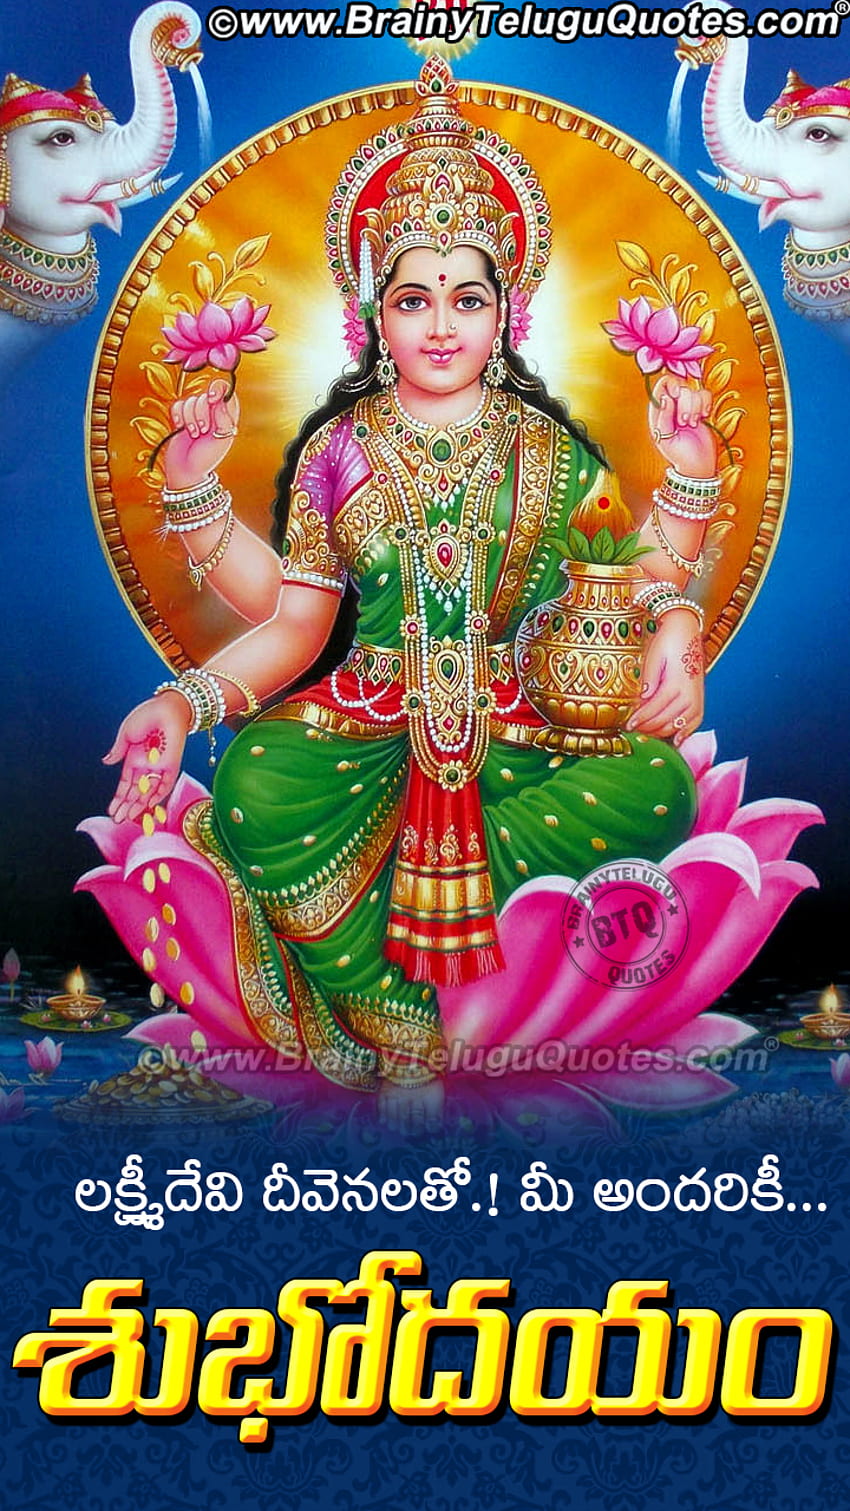 Subhodayam Wishes Quotes in Telugu with Goddess Maha Lakshmi ...